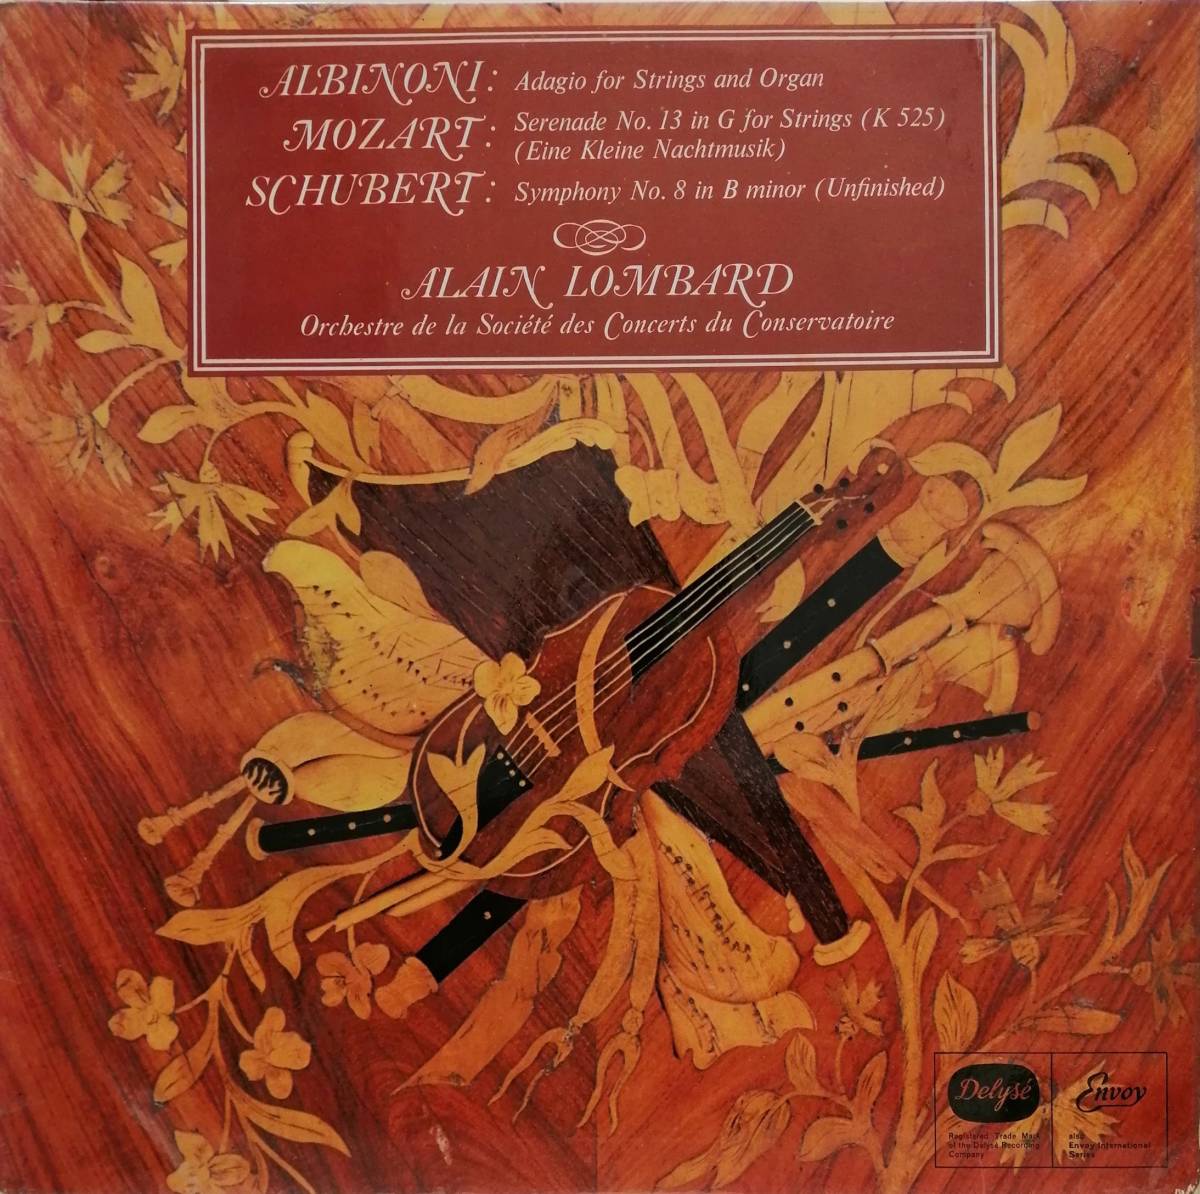 輸入LP盤 アラン・ロンバール/Conservatoire　Albinini 「アダージョ」, Mozart セレナード K525 & Schubert 交響曲8番「未完成」_画像1